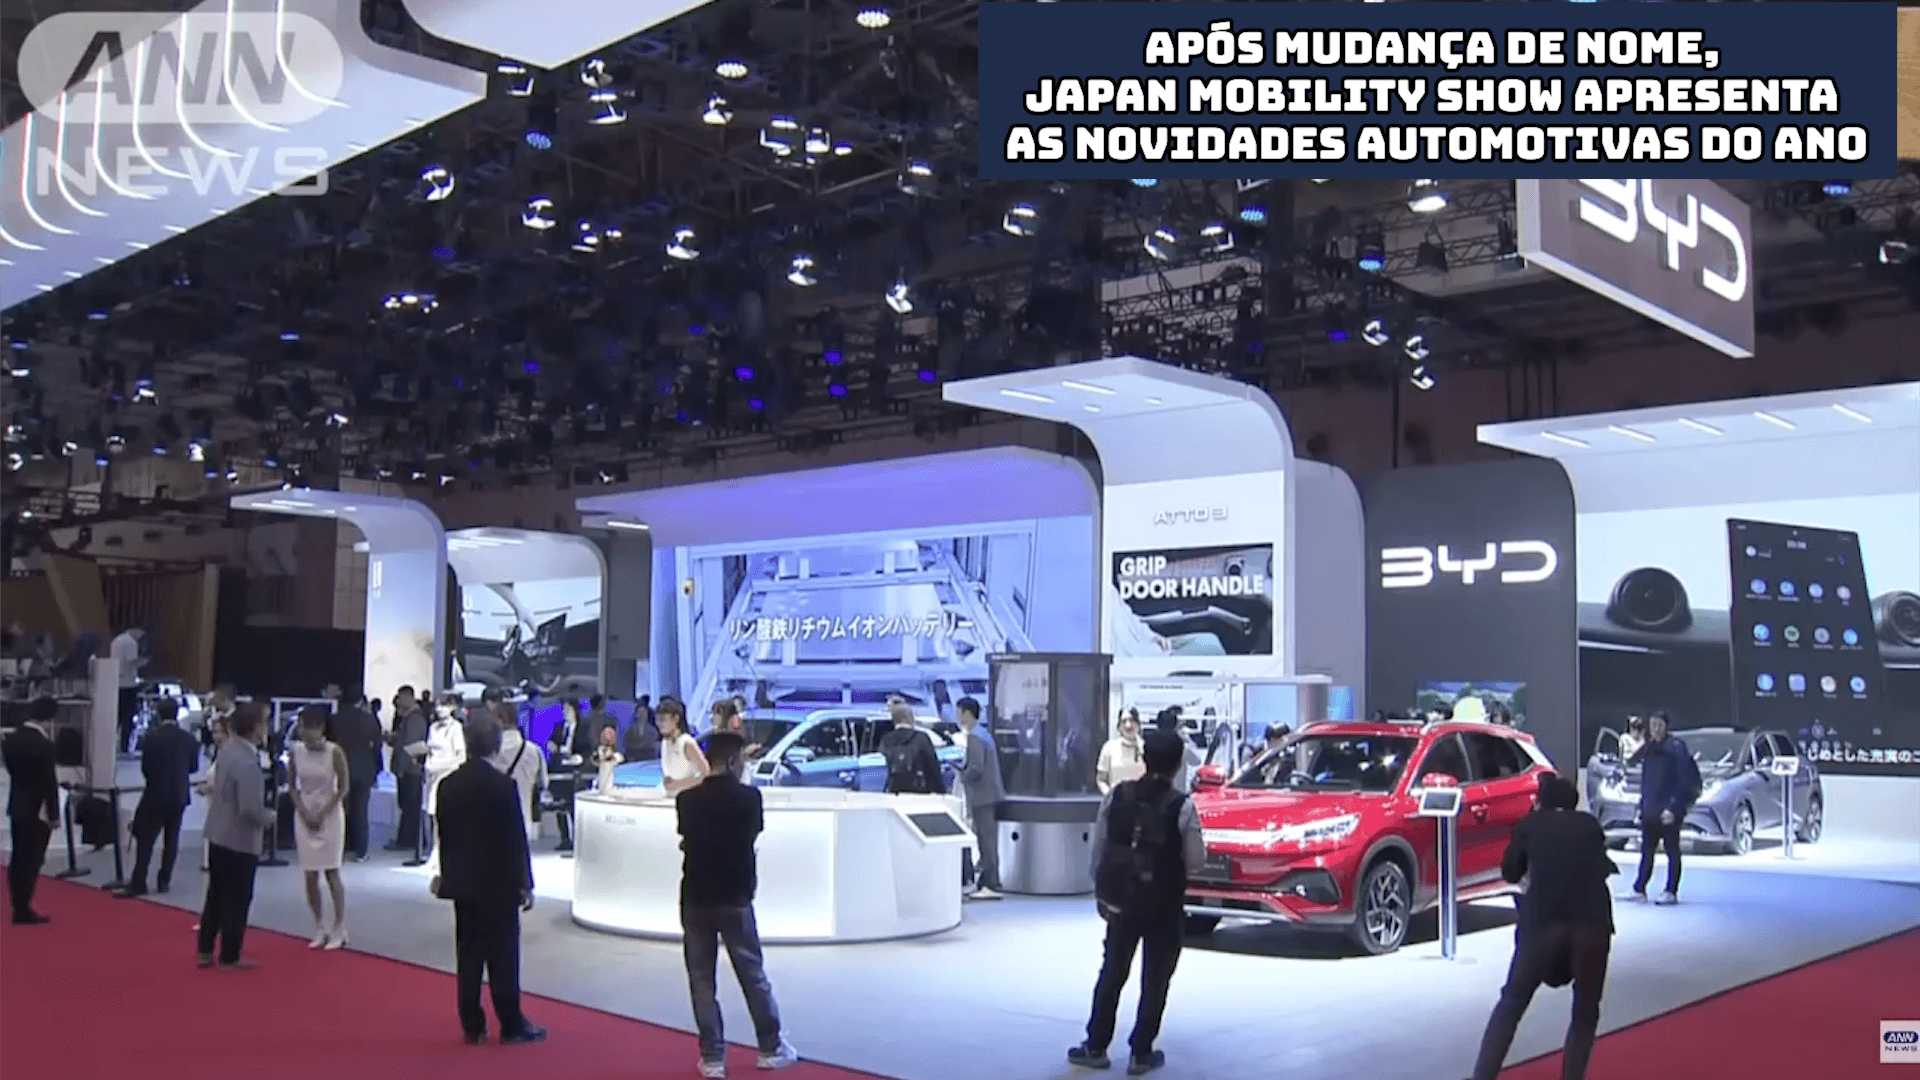 Após mudança de nome, Japan Mobility Show apresenta as novidades automotivas do ano 